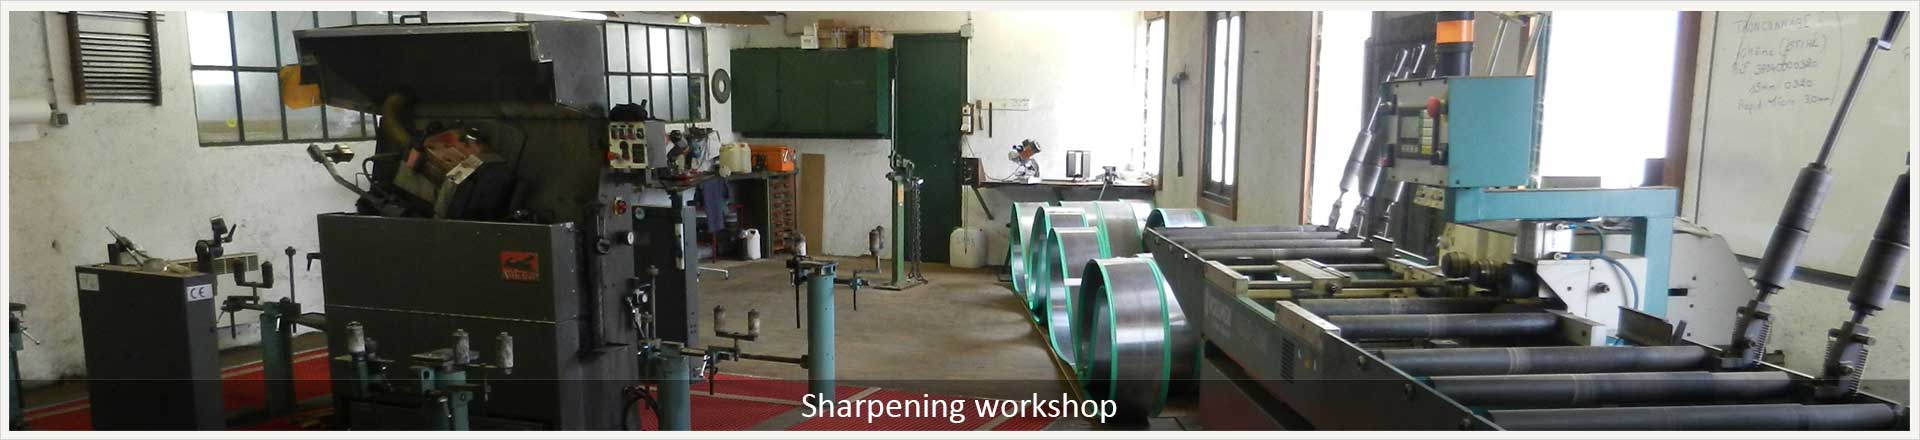 Sharpening workshop